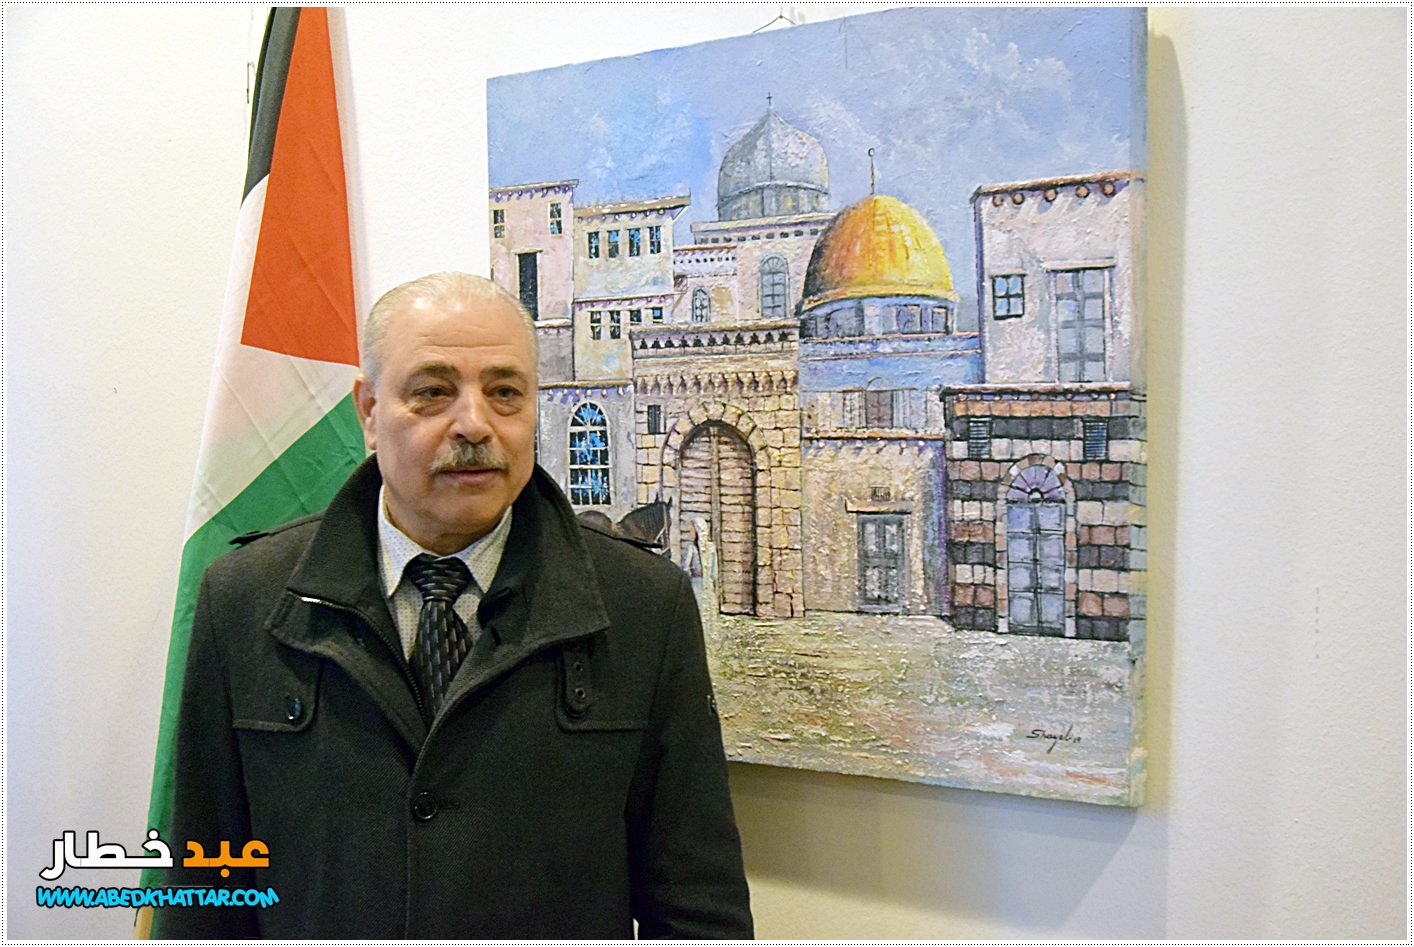 في الذكرى الــ 43 ليوم الارض الخالد افتتاح معرض الفنان الفلسطيني السوري مأمون الشايب في برلين